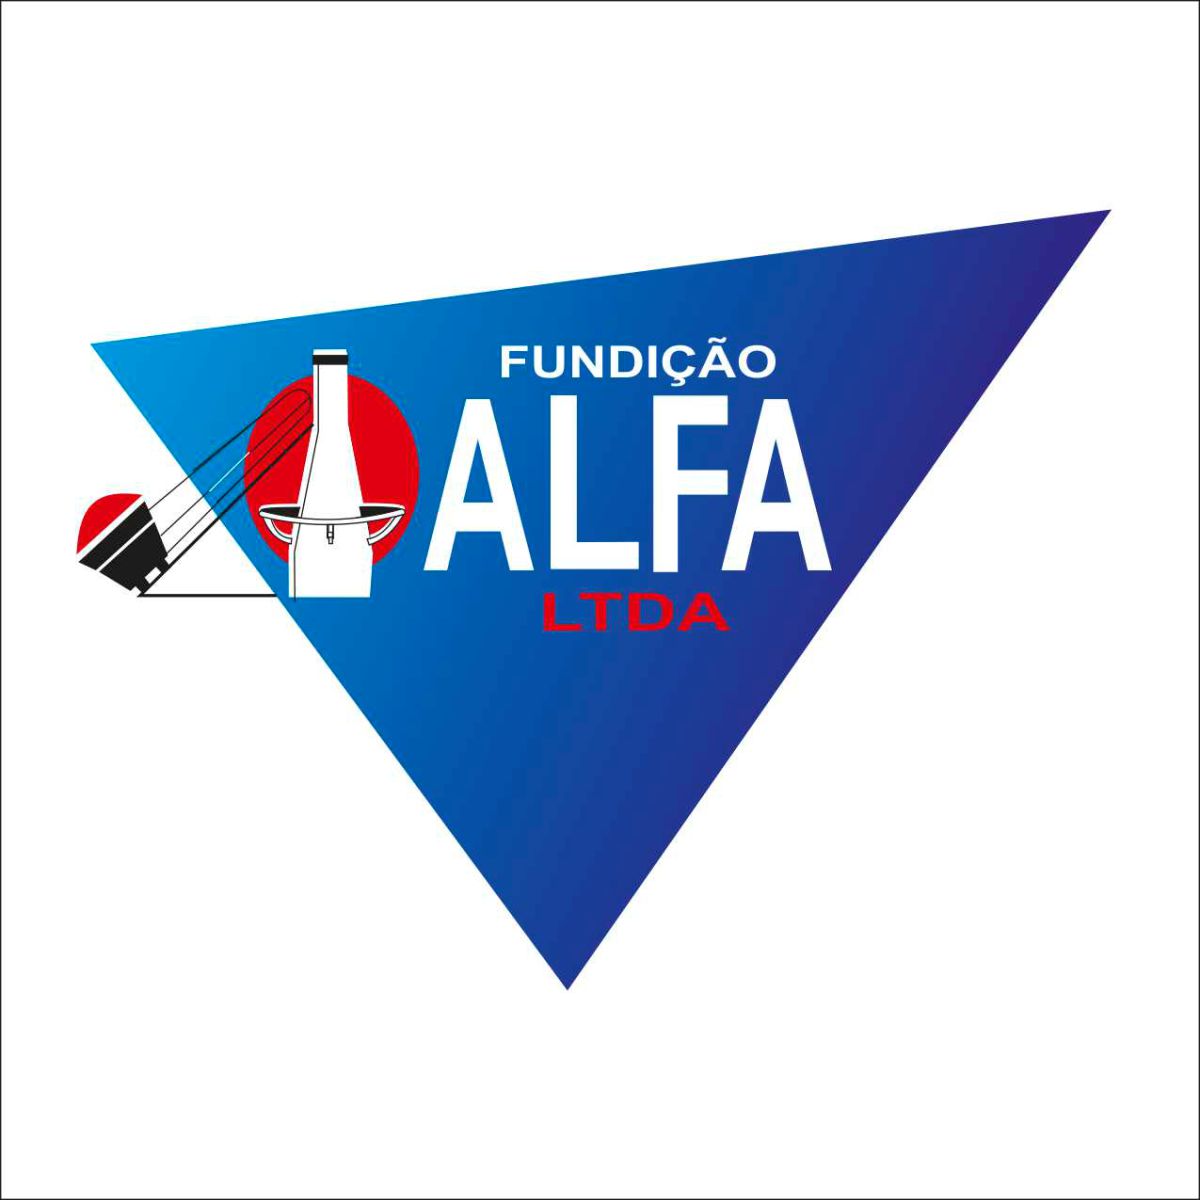 Fundição Alfa Ltda